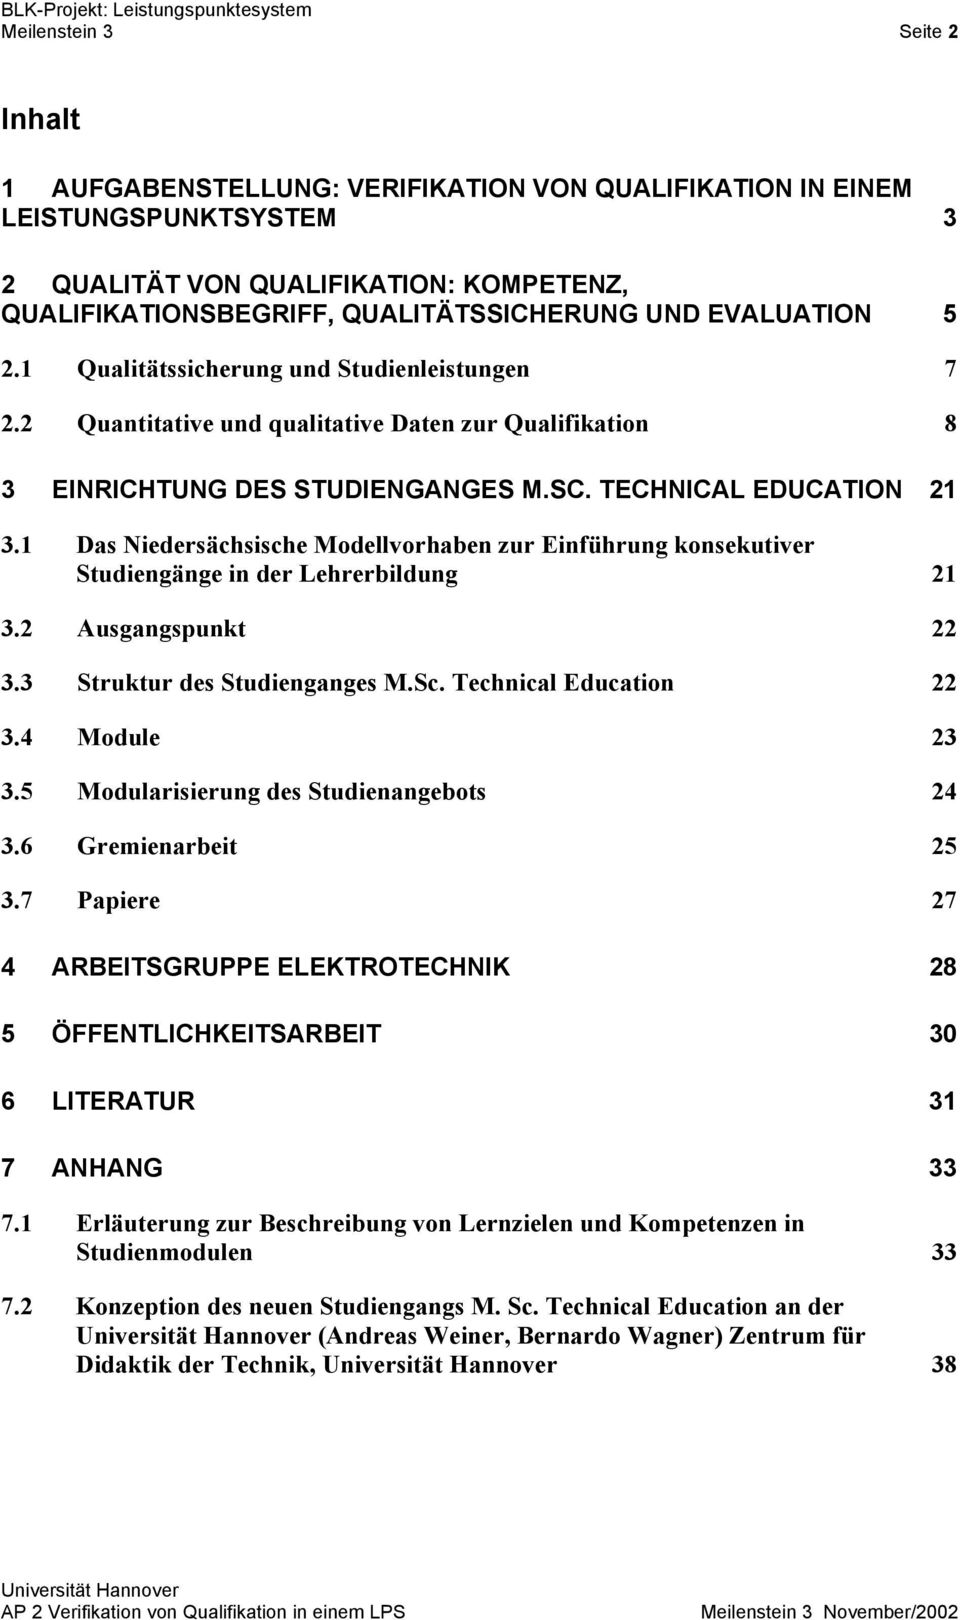 1 Das Niedersächsische Modellvorhaben zur Einführung konsekutiver Studiengänge in der Lehrerbildung 21 3.2 Ausgangspunkt 22 3.3 Struktur des Studienganges M.Sc. Technical Education 22 3.4 Module 23 3.